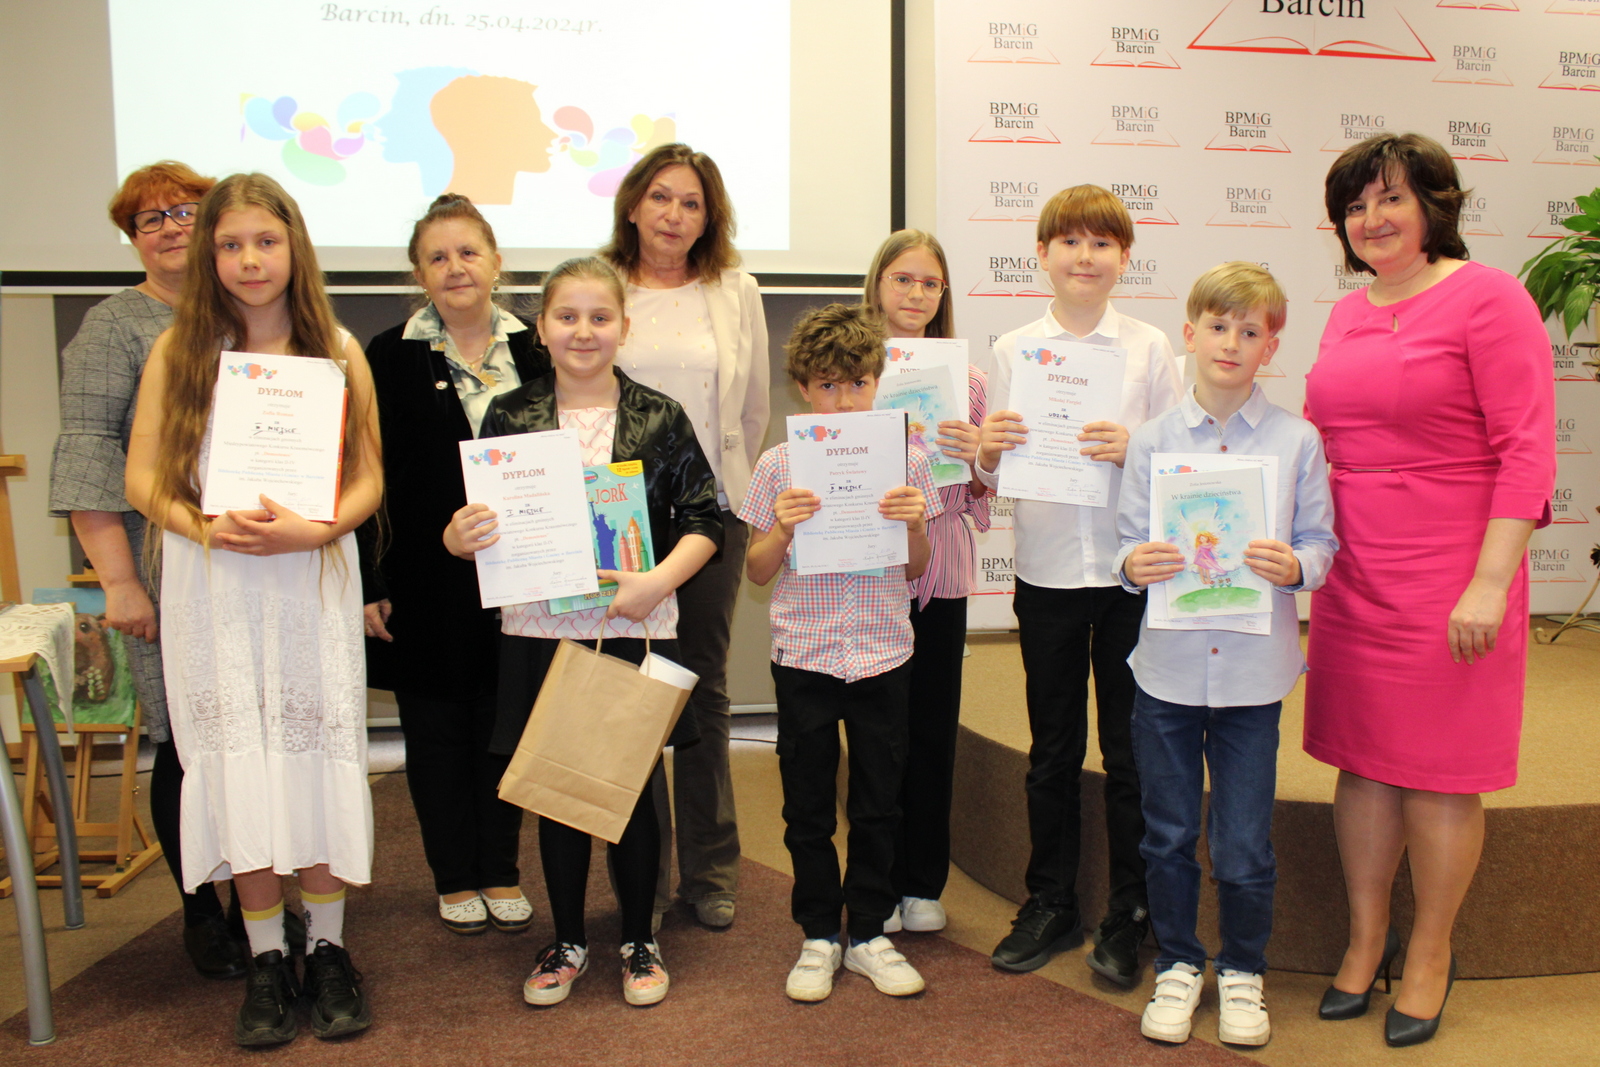 Zdjęcie grupowe pierwszej grupy wiekowej uczestników razem z jury i dyrekcją biblioteki, dzieci trzymają otrzymane nagrody i dyplomy.